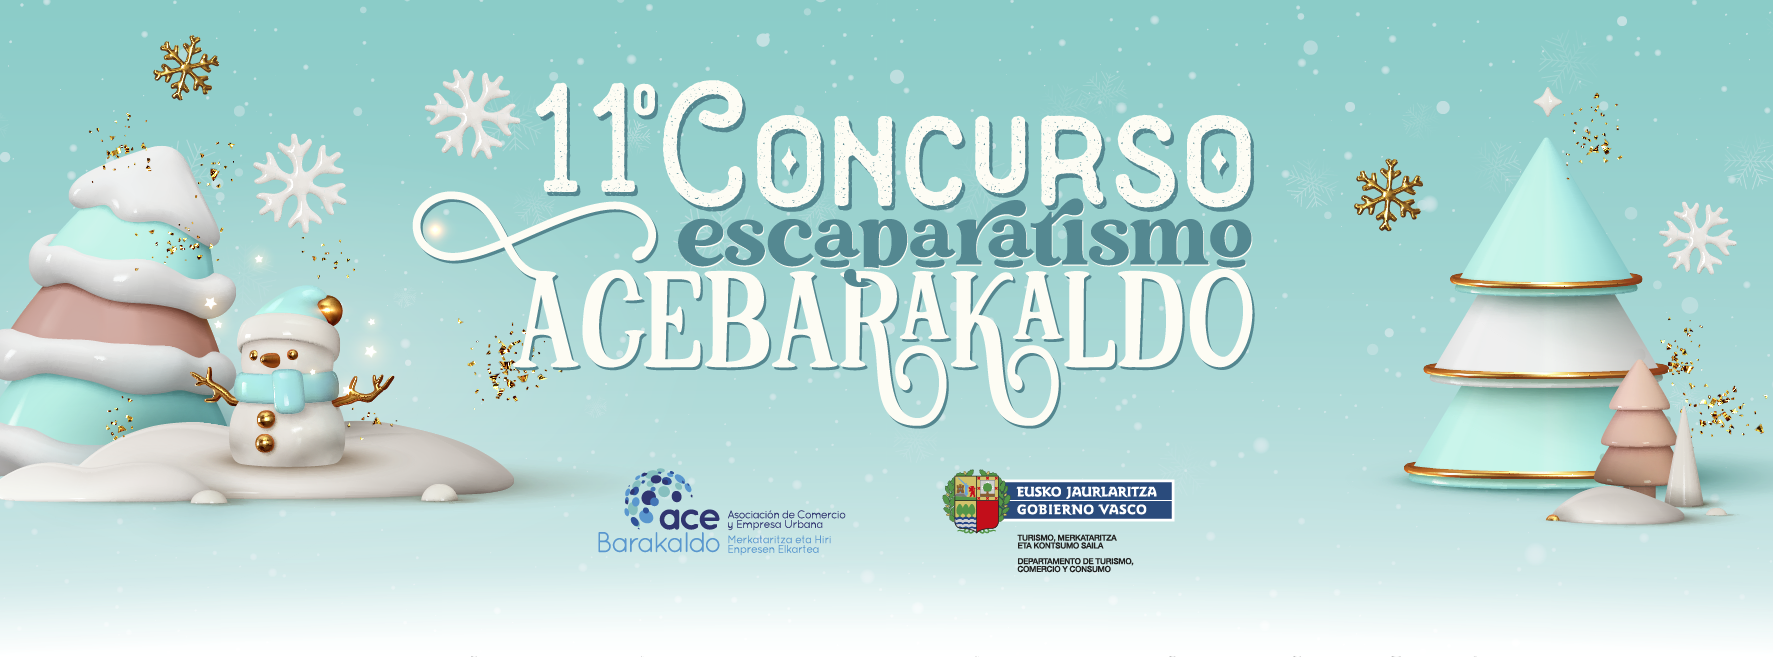 DG_ACEBRK_202311_ConcursoEscaparates_PortadaFB